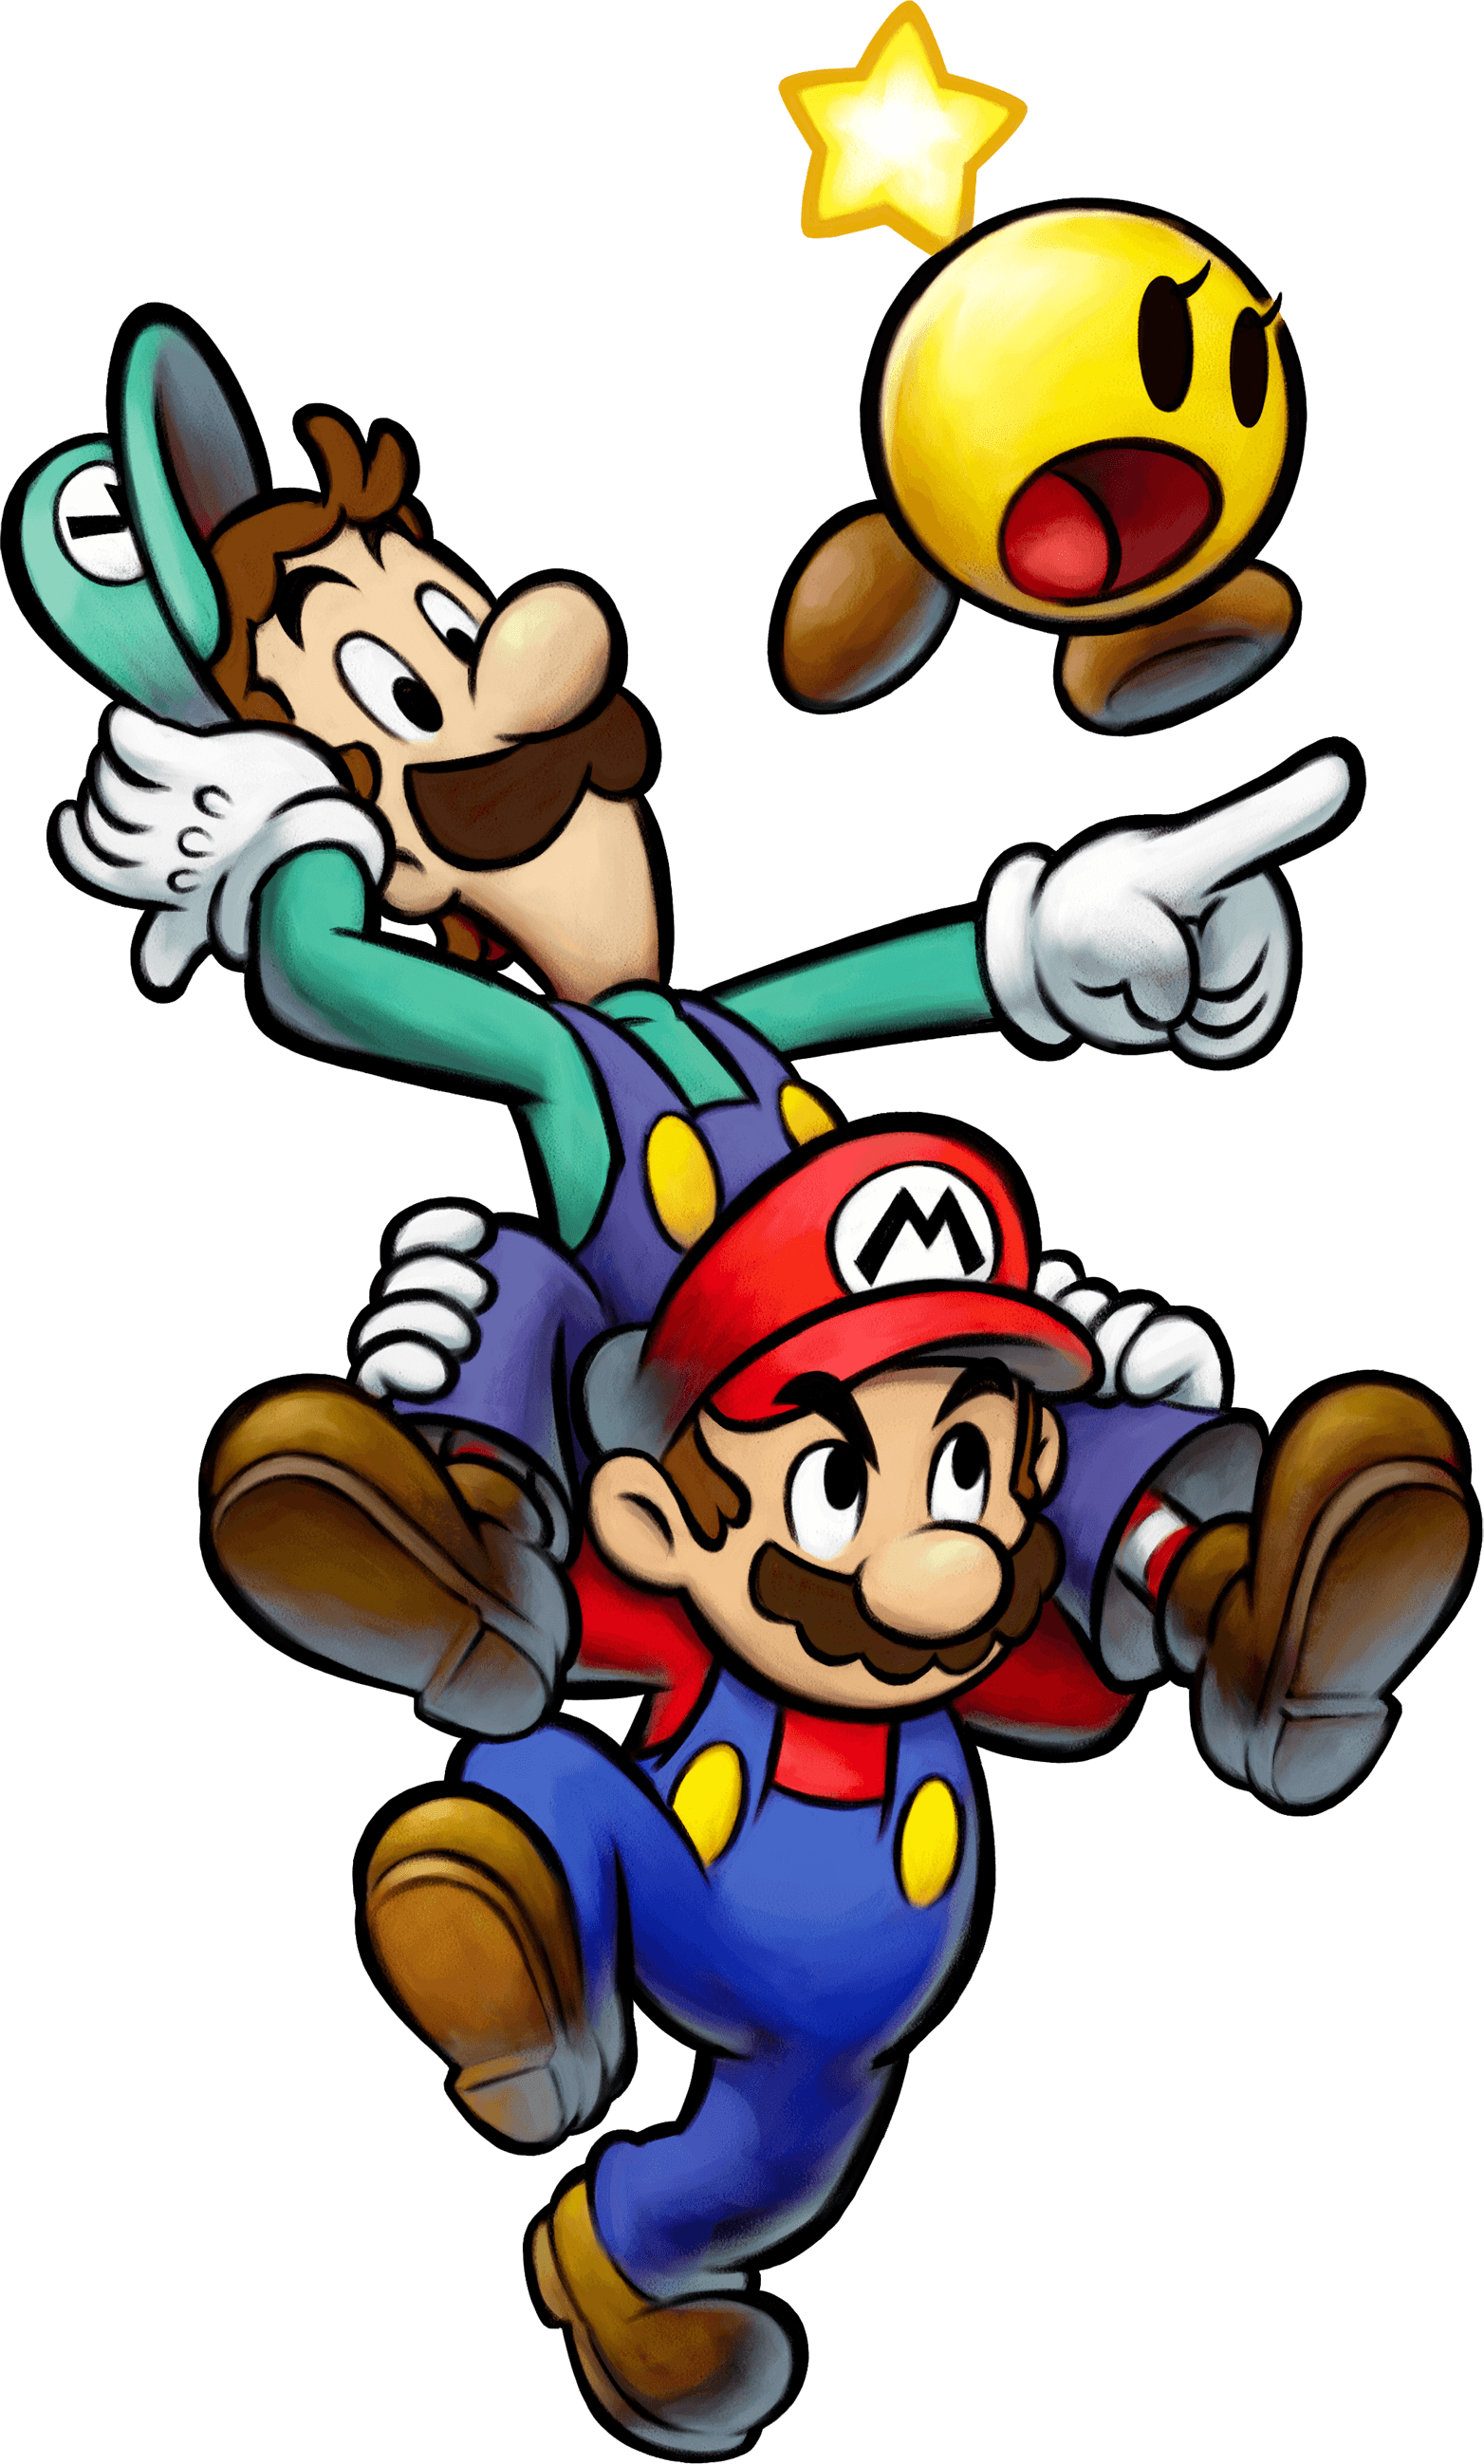 Bowser  Bowser, Super mario art, Mario and luigi